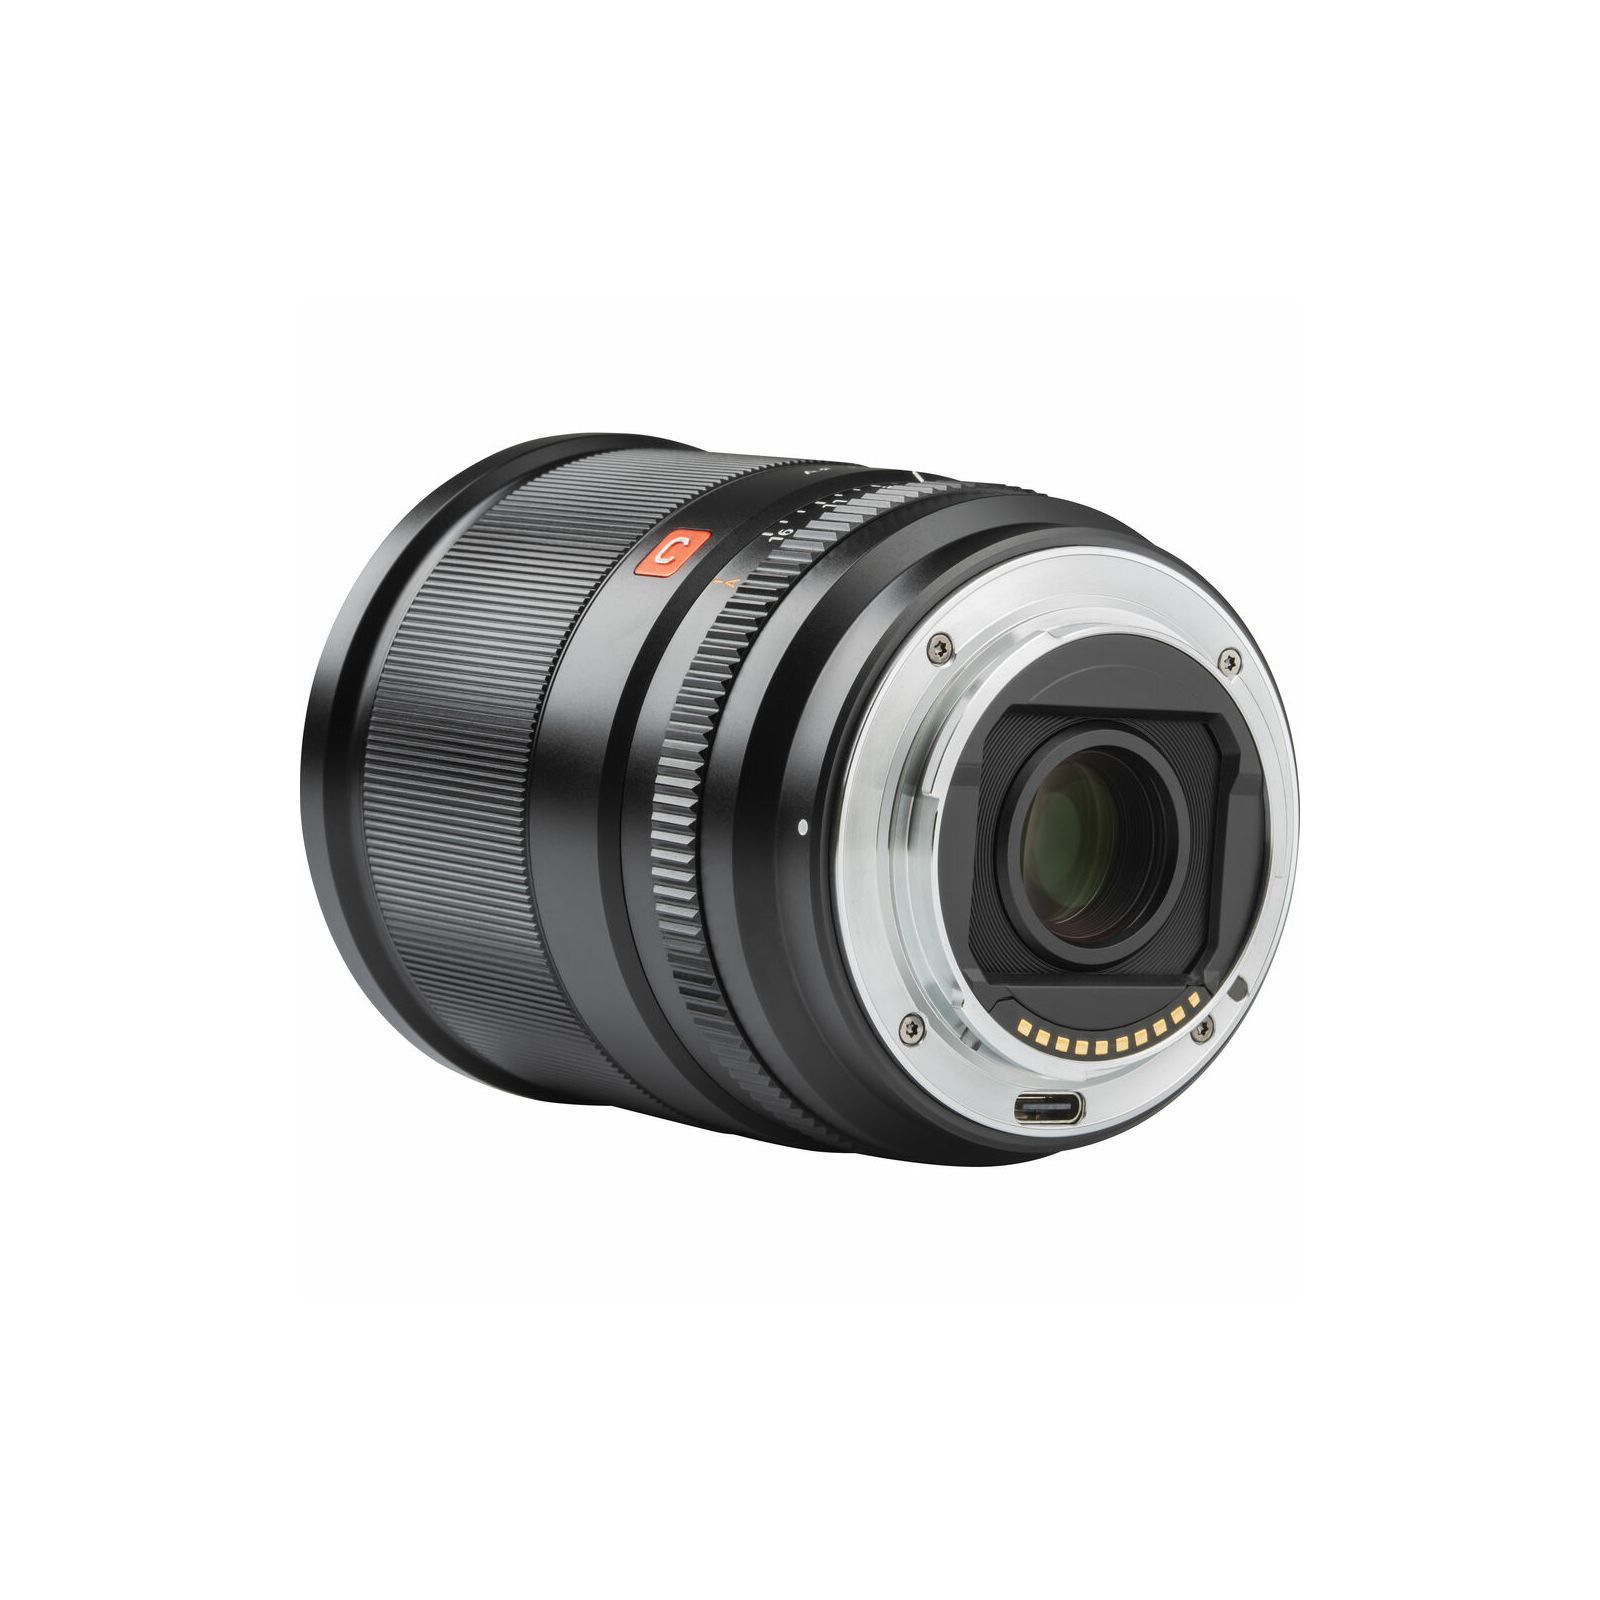 Viltrox AF 13mm f/1.4 XF objektiv za Sony E-Mount